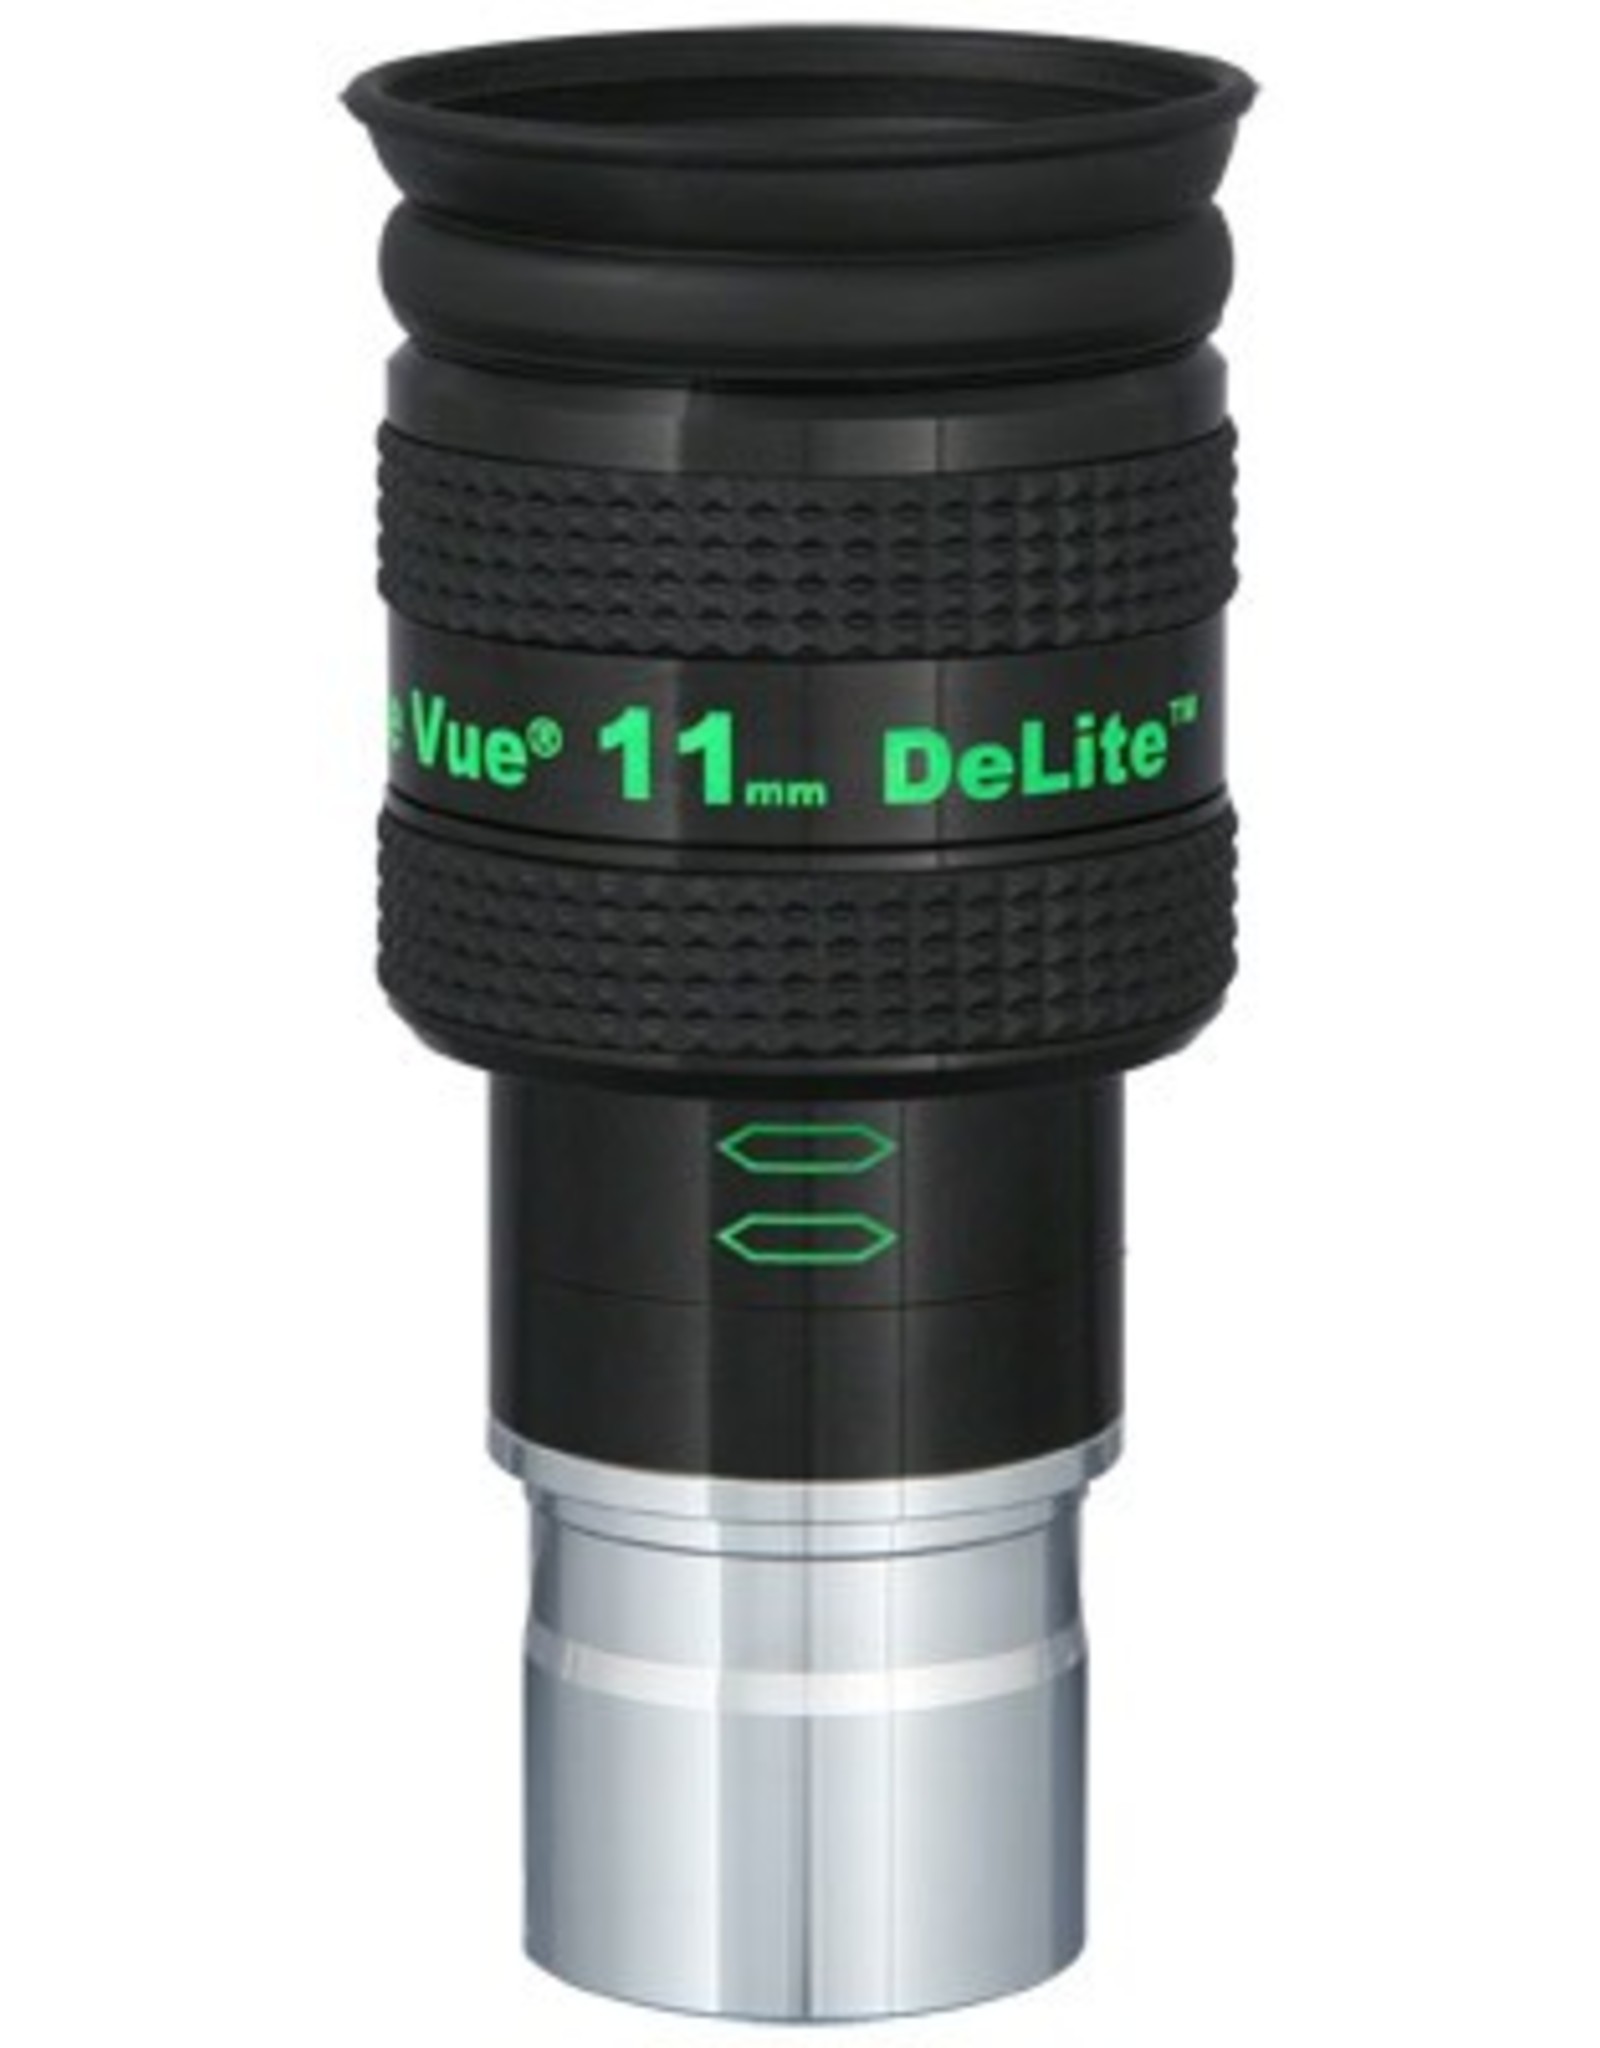 Tele Vue DeLite 11mm Eyepiece 1.25